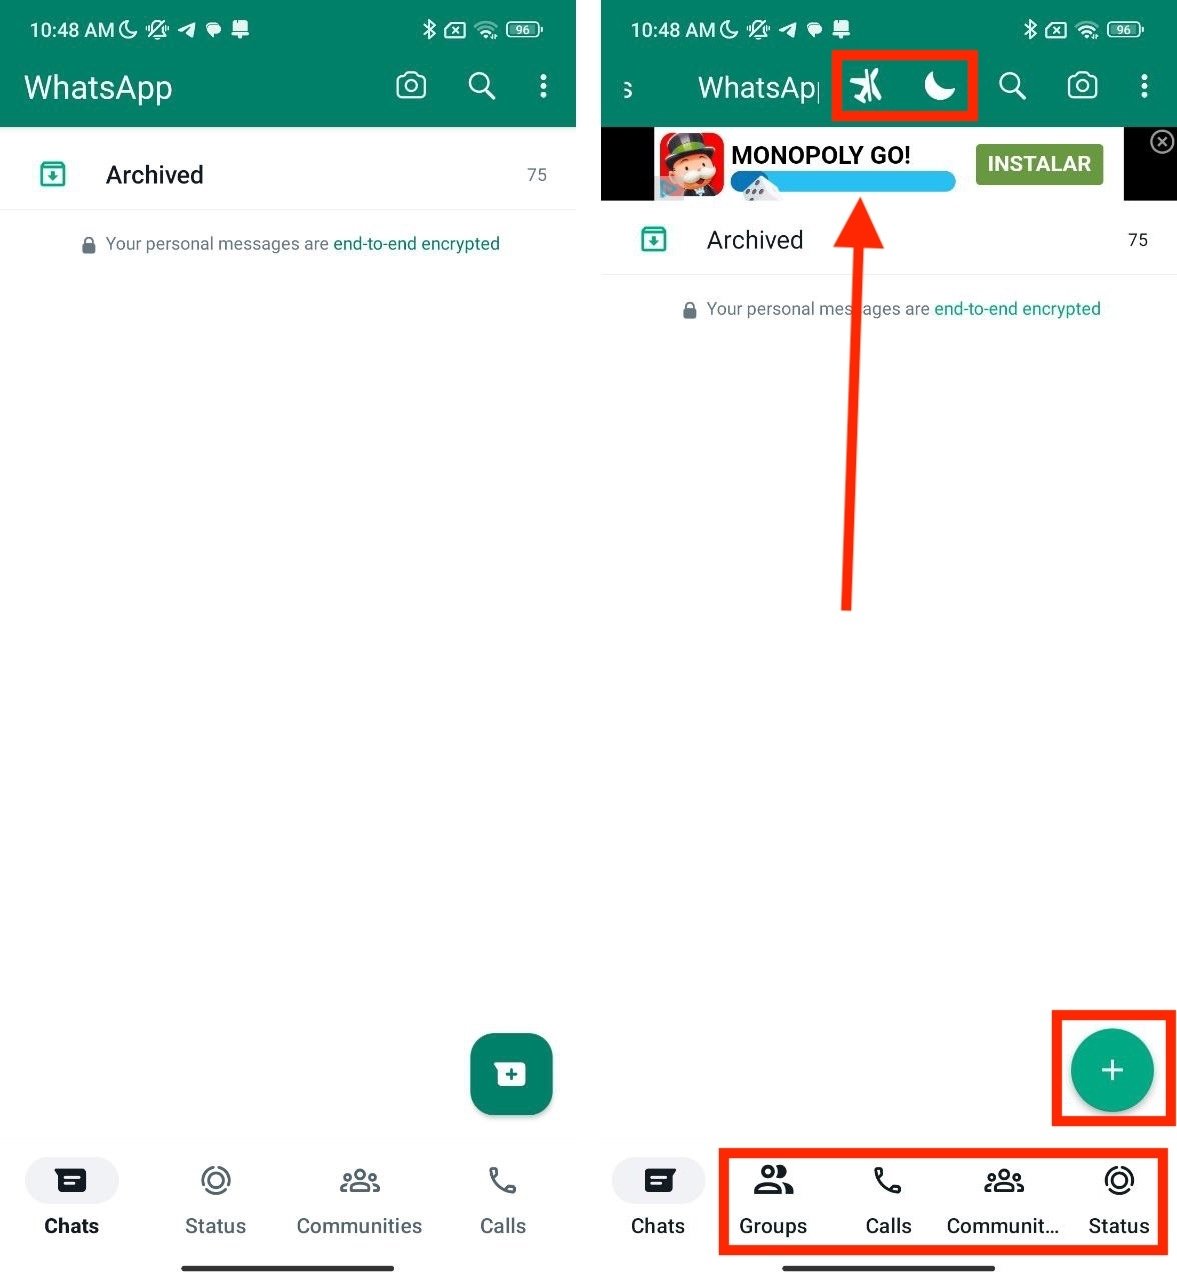 Diferenças na tela principal entre WhatsApp e WhatsApp Plus